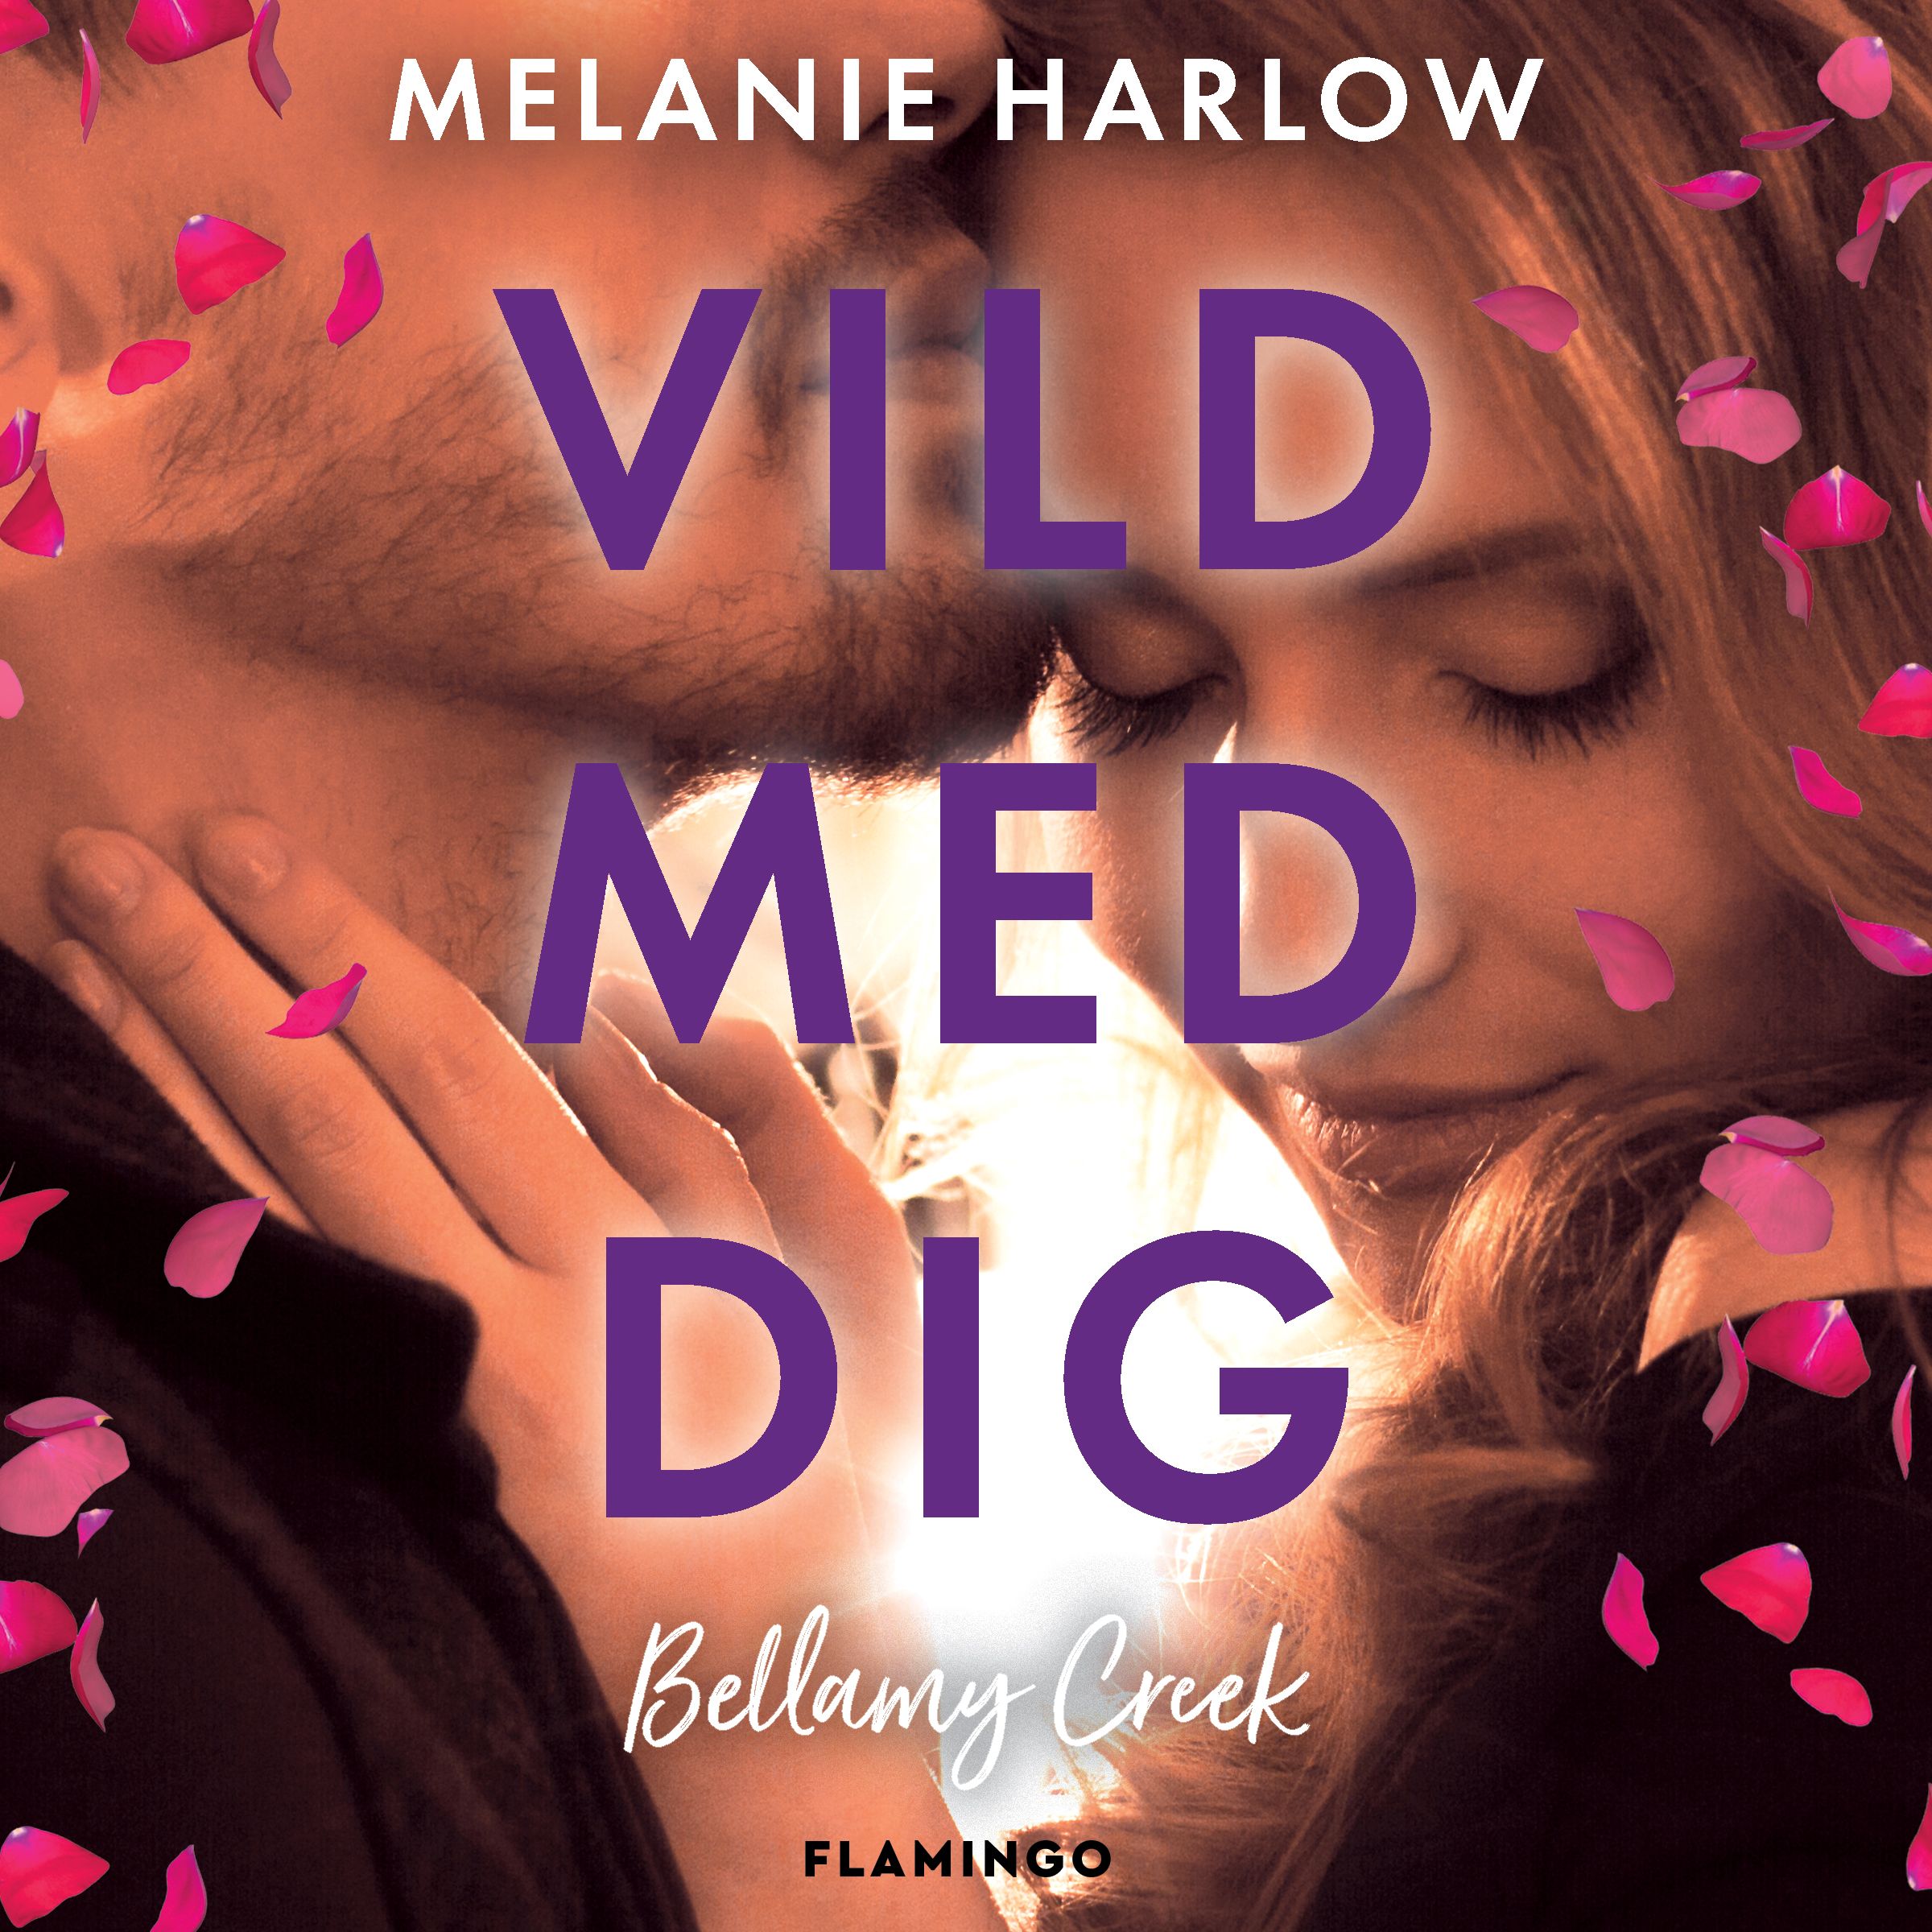 Vild med dig, audiobook by Melanie Harlow